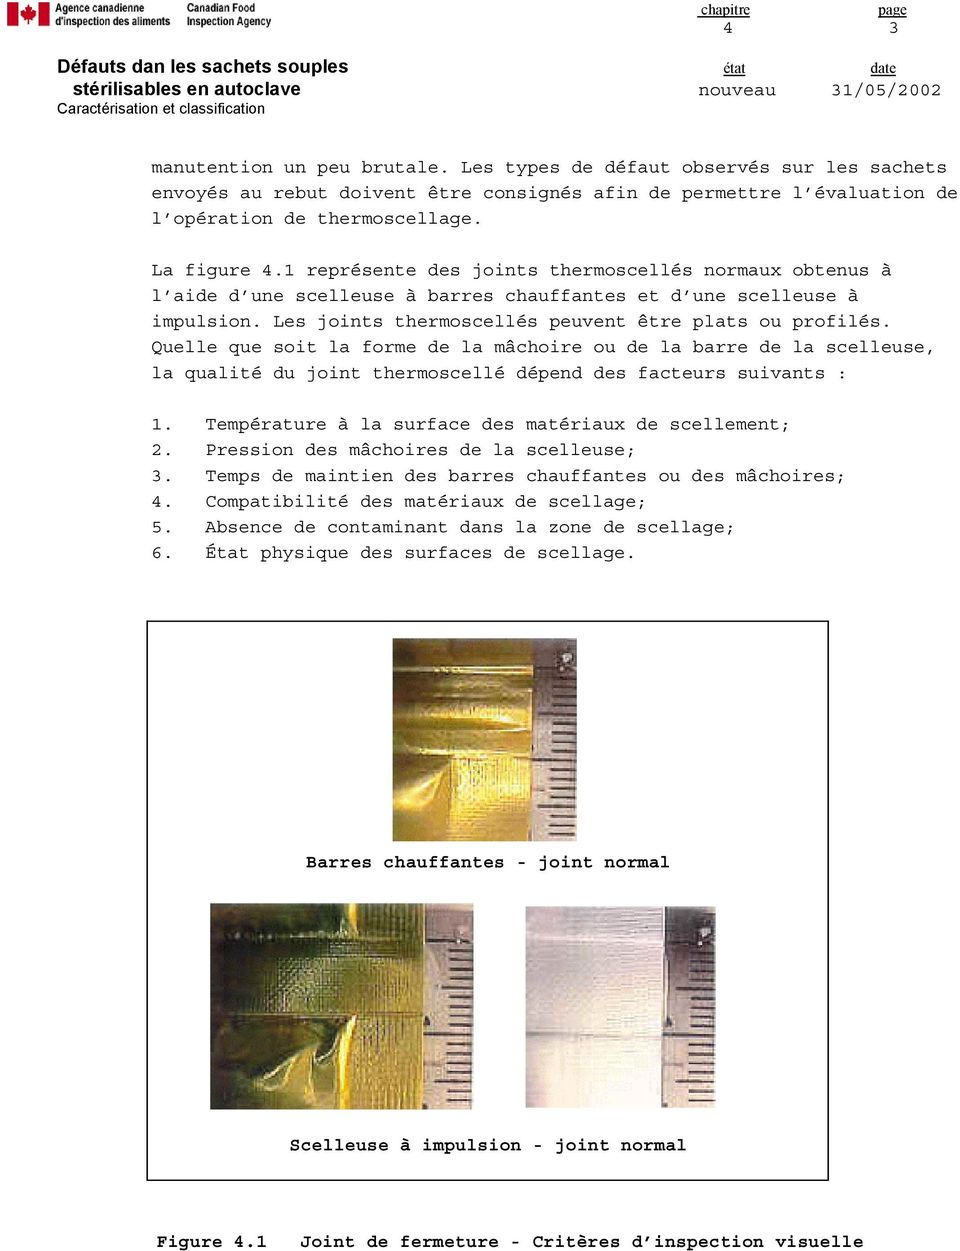 Quelle que soit la forme de la mâchoire ou de la barre de la scelleuse, la qualité du joint thermoscellé dépend des facteurs suivants : 1. Température à la surface des matériaux de scellement; 2.